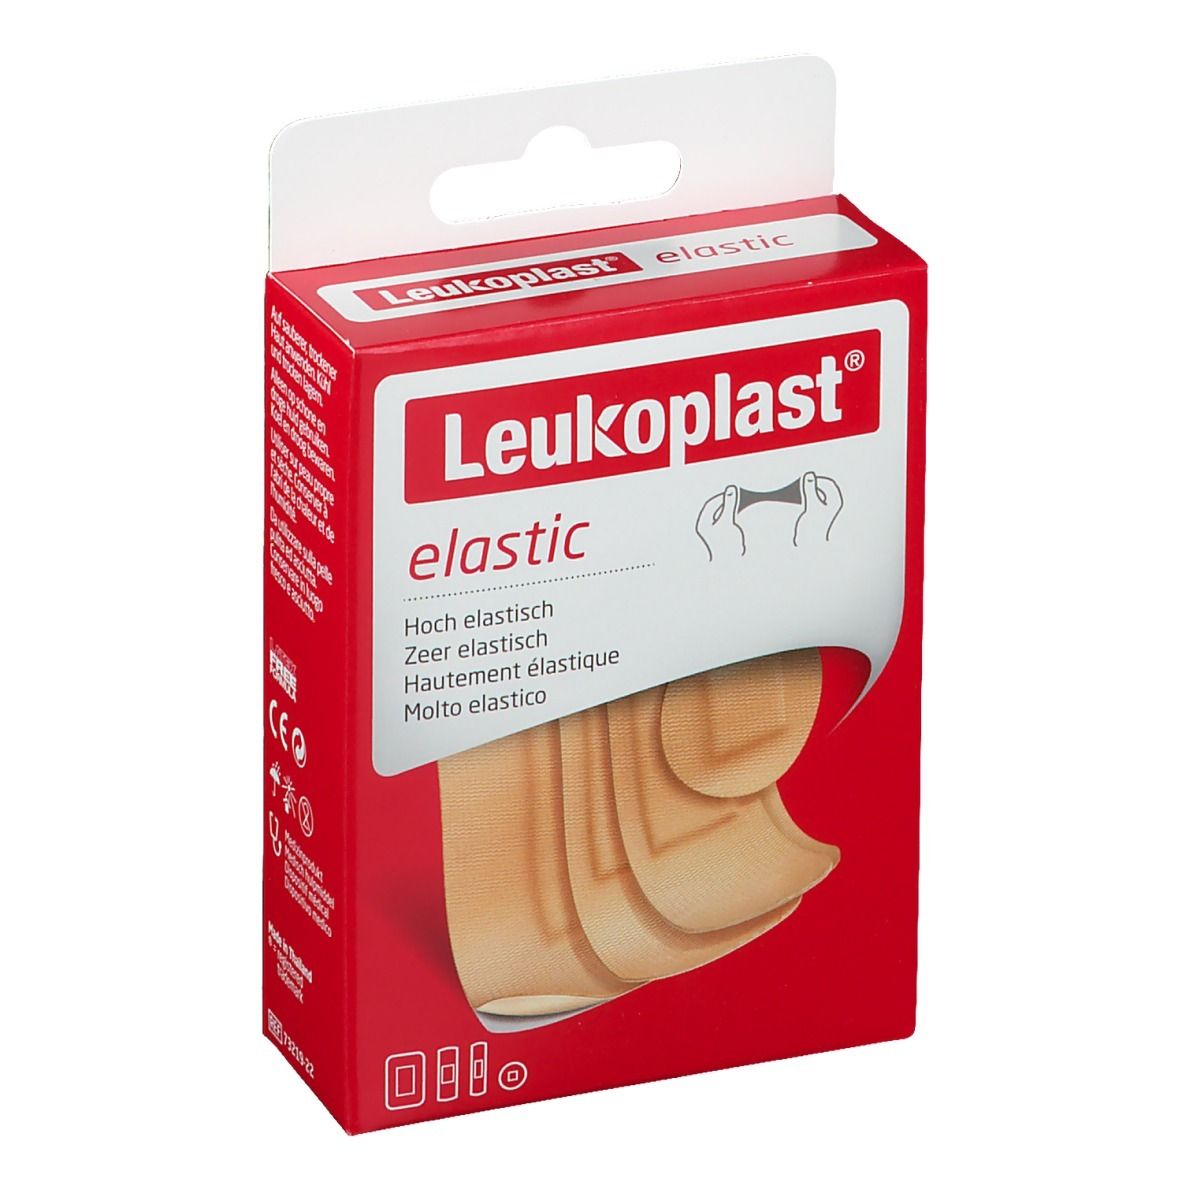 Leukoplast Elastic Assortiment